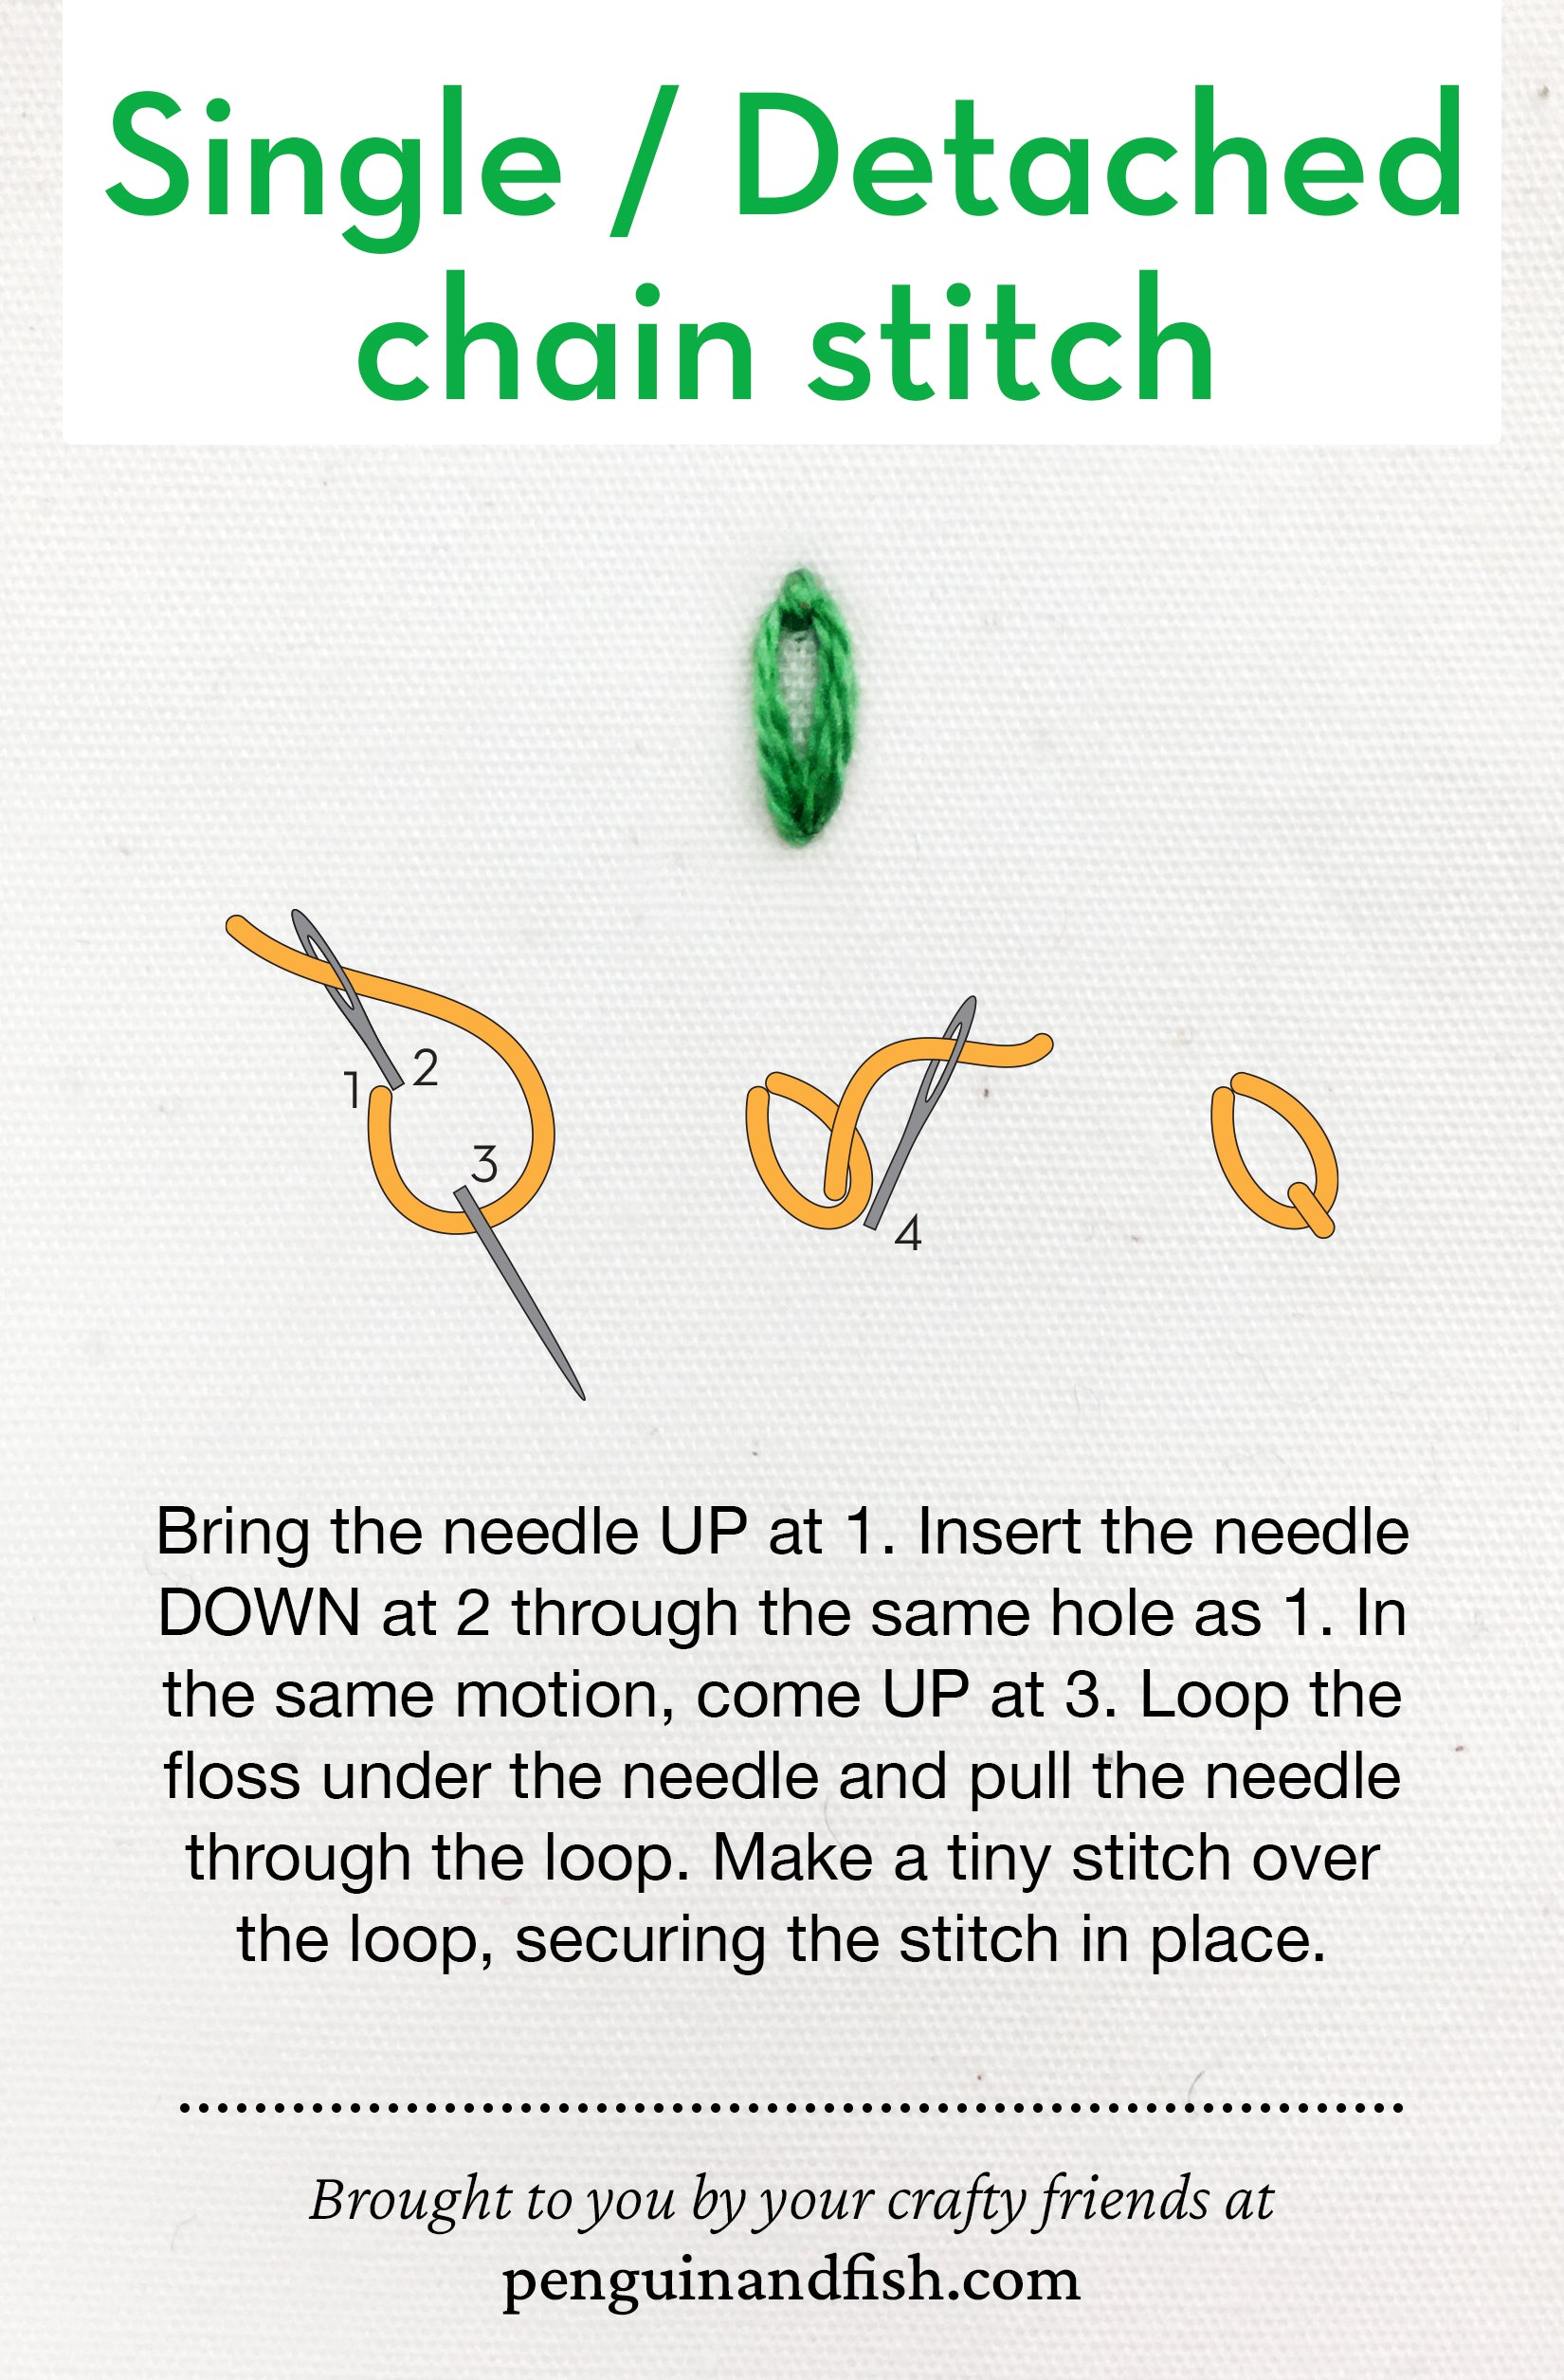 Single/detached chain stitch diagram for Pinterest